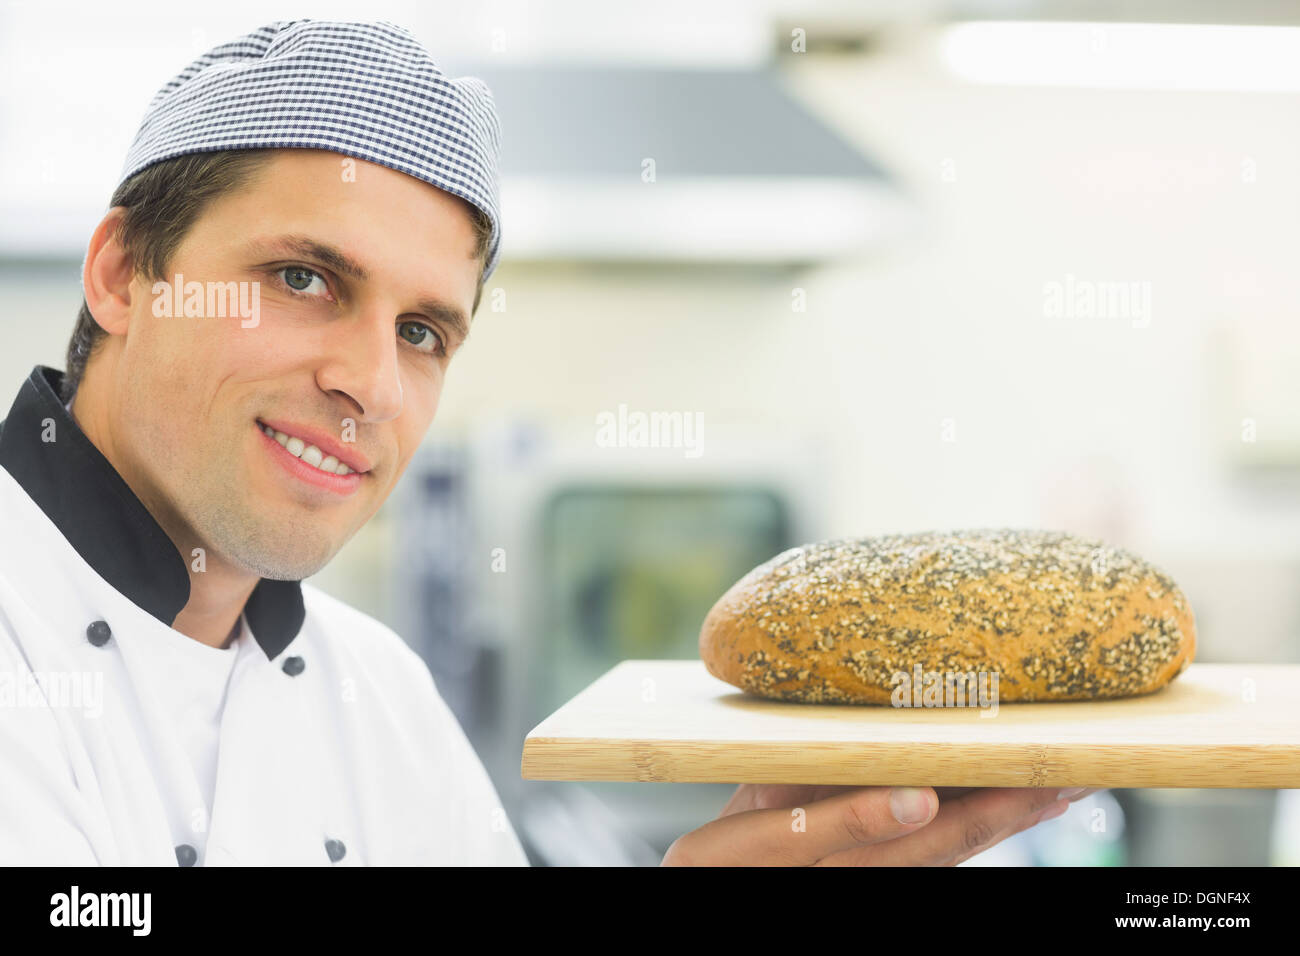 Young baker montrant une miche de pain Banque D'Images